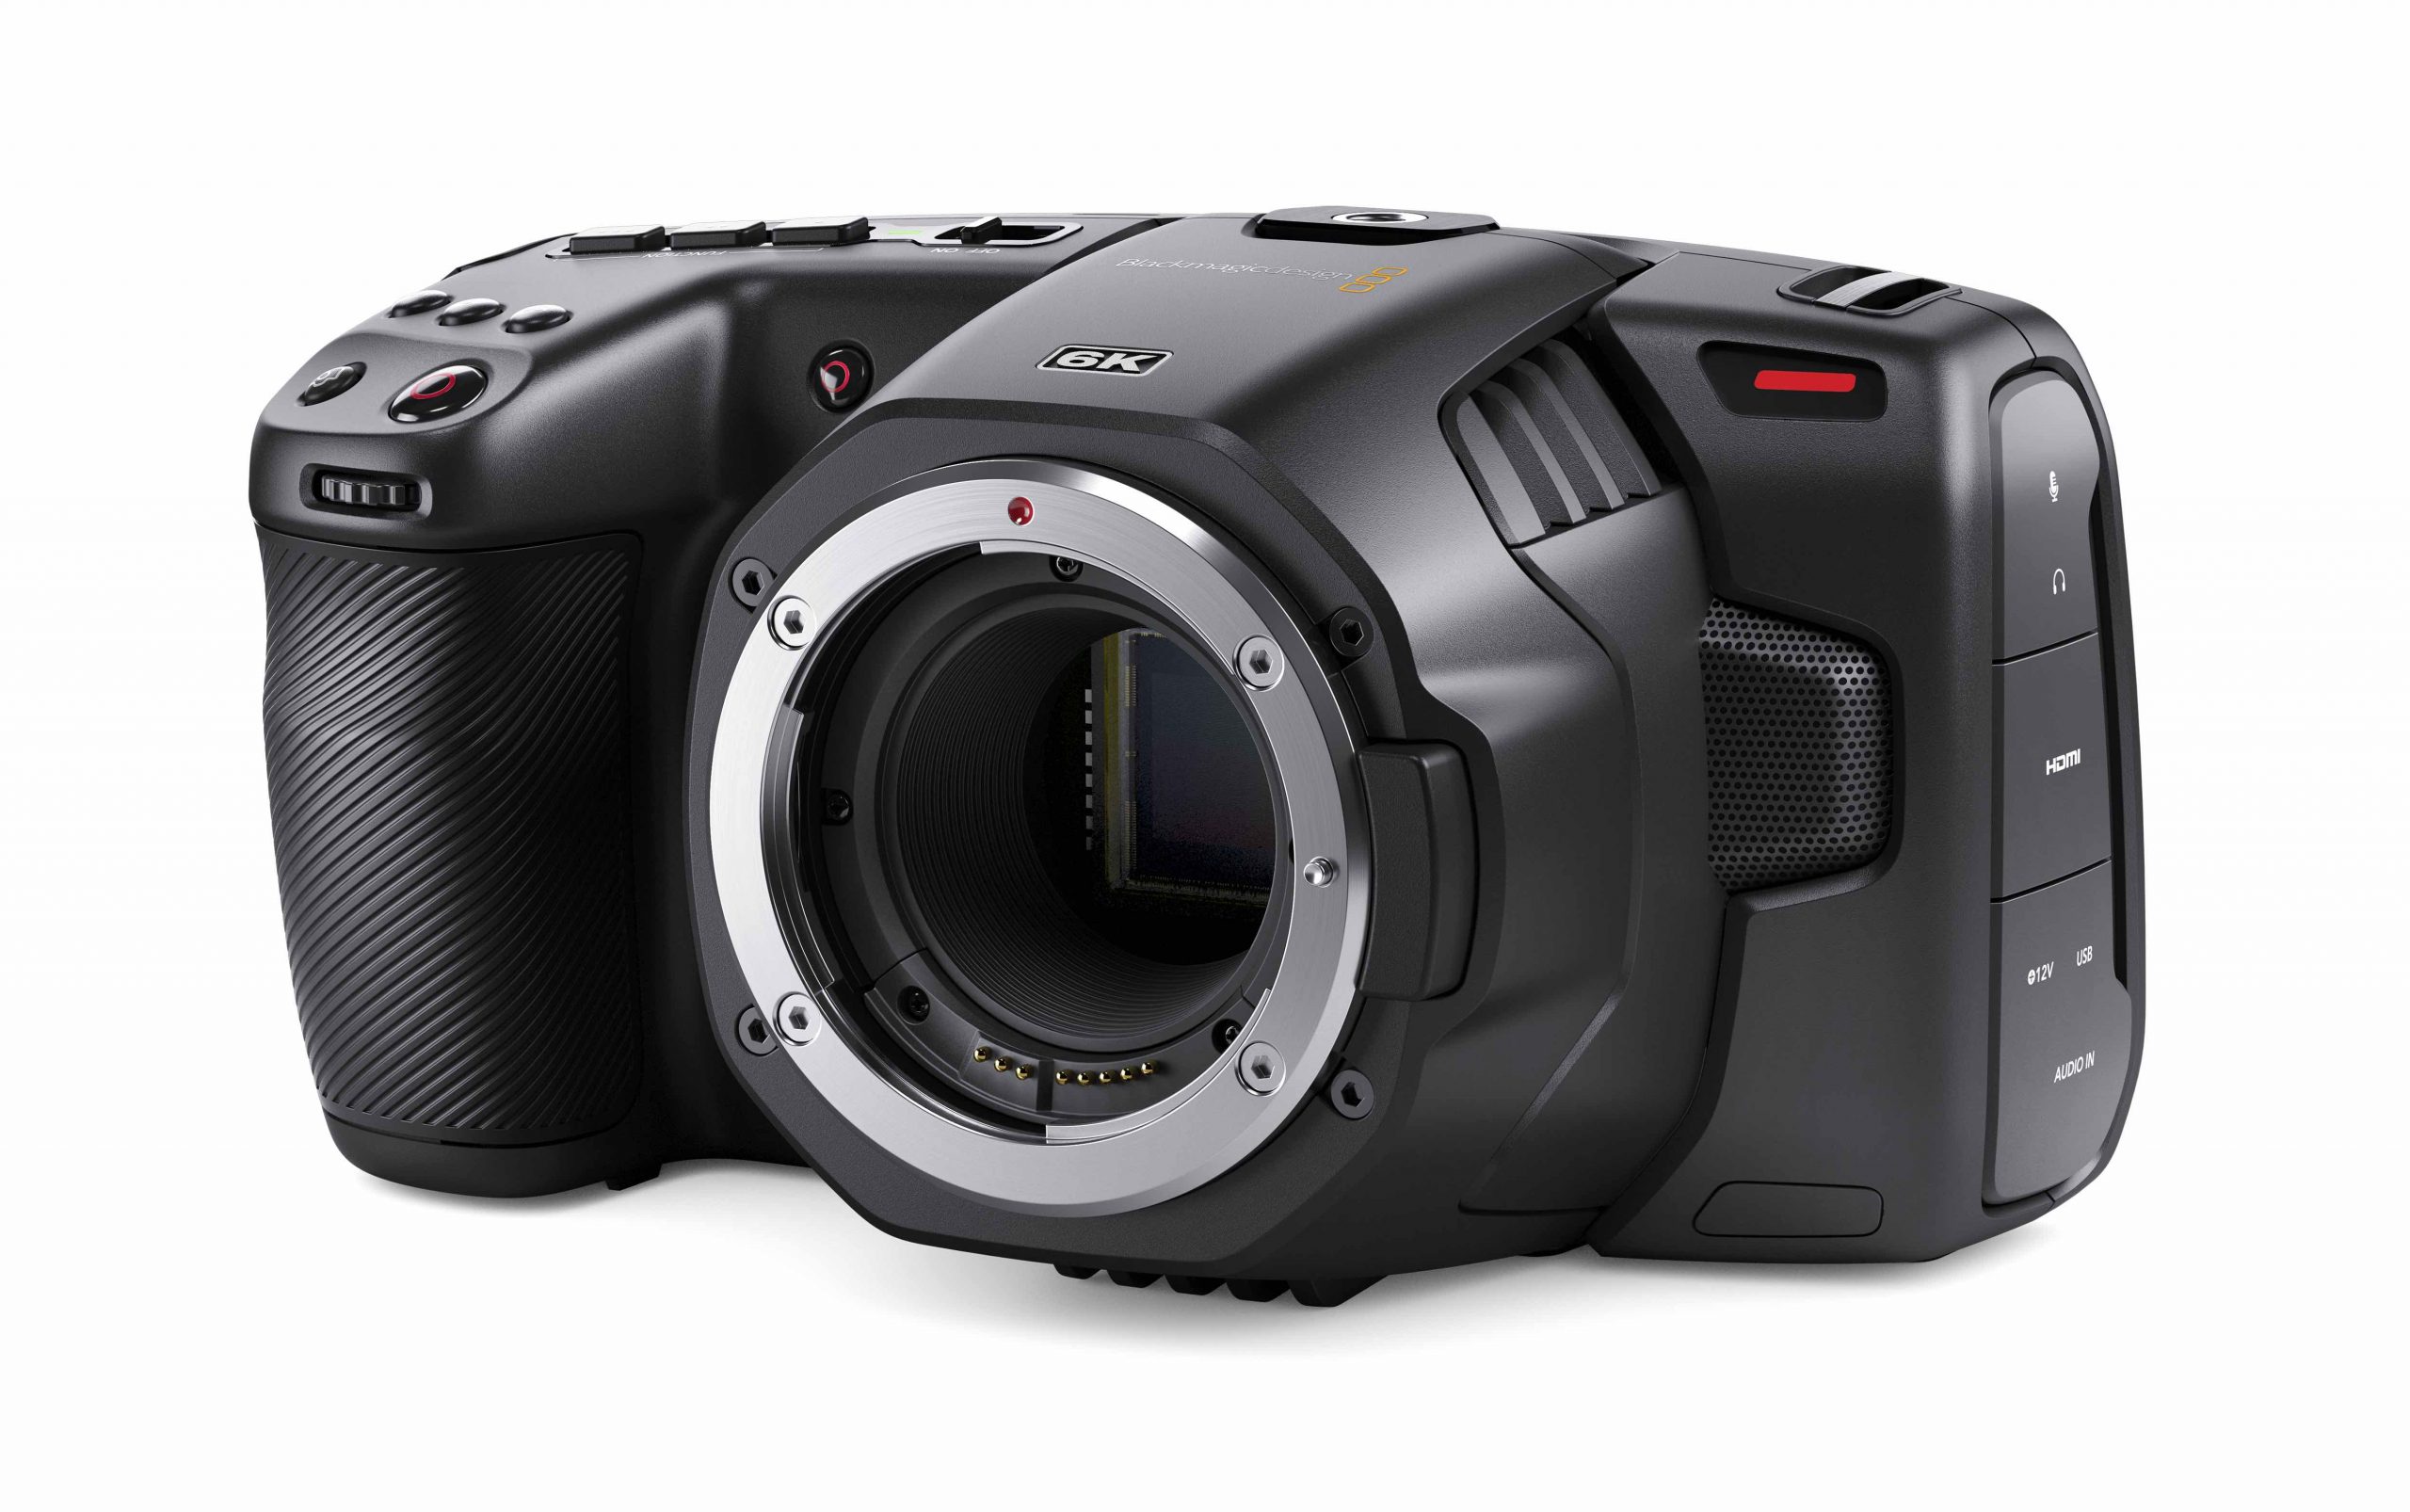 Blackmagic Design Announces the Crazy Small Pocket Cinema Camera